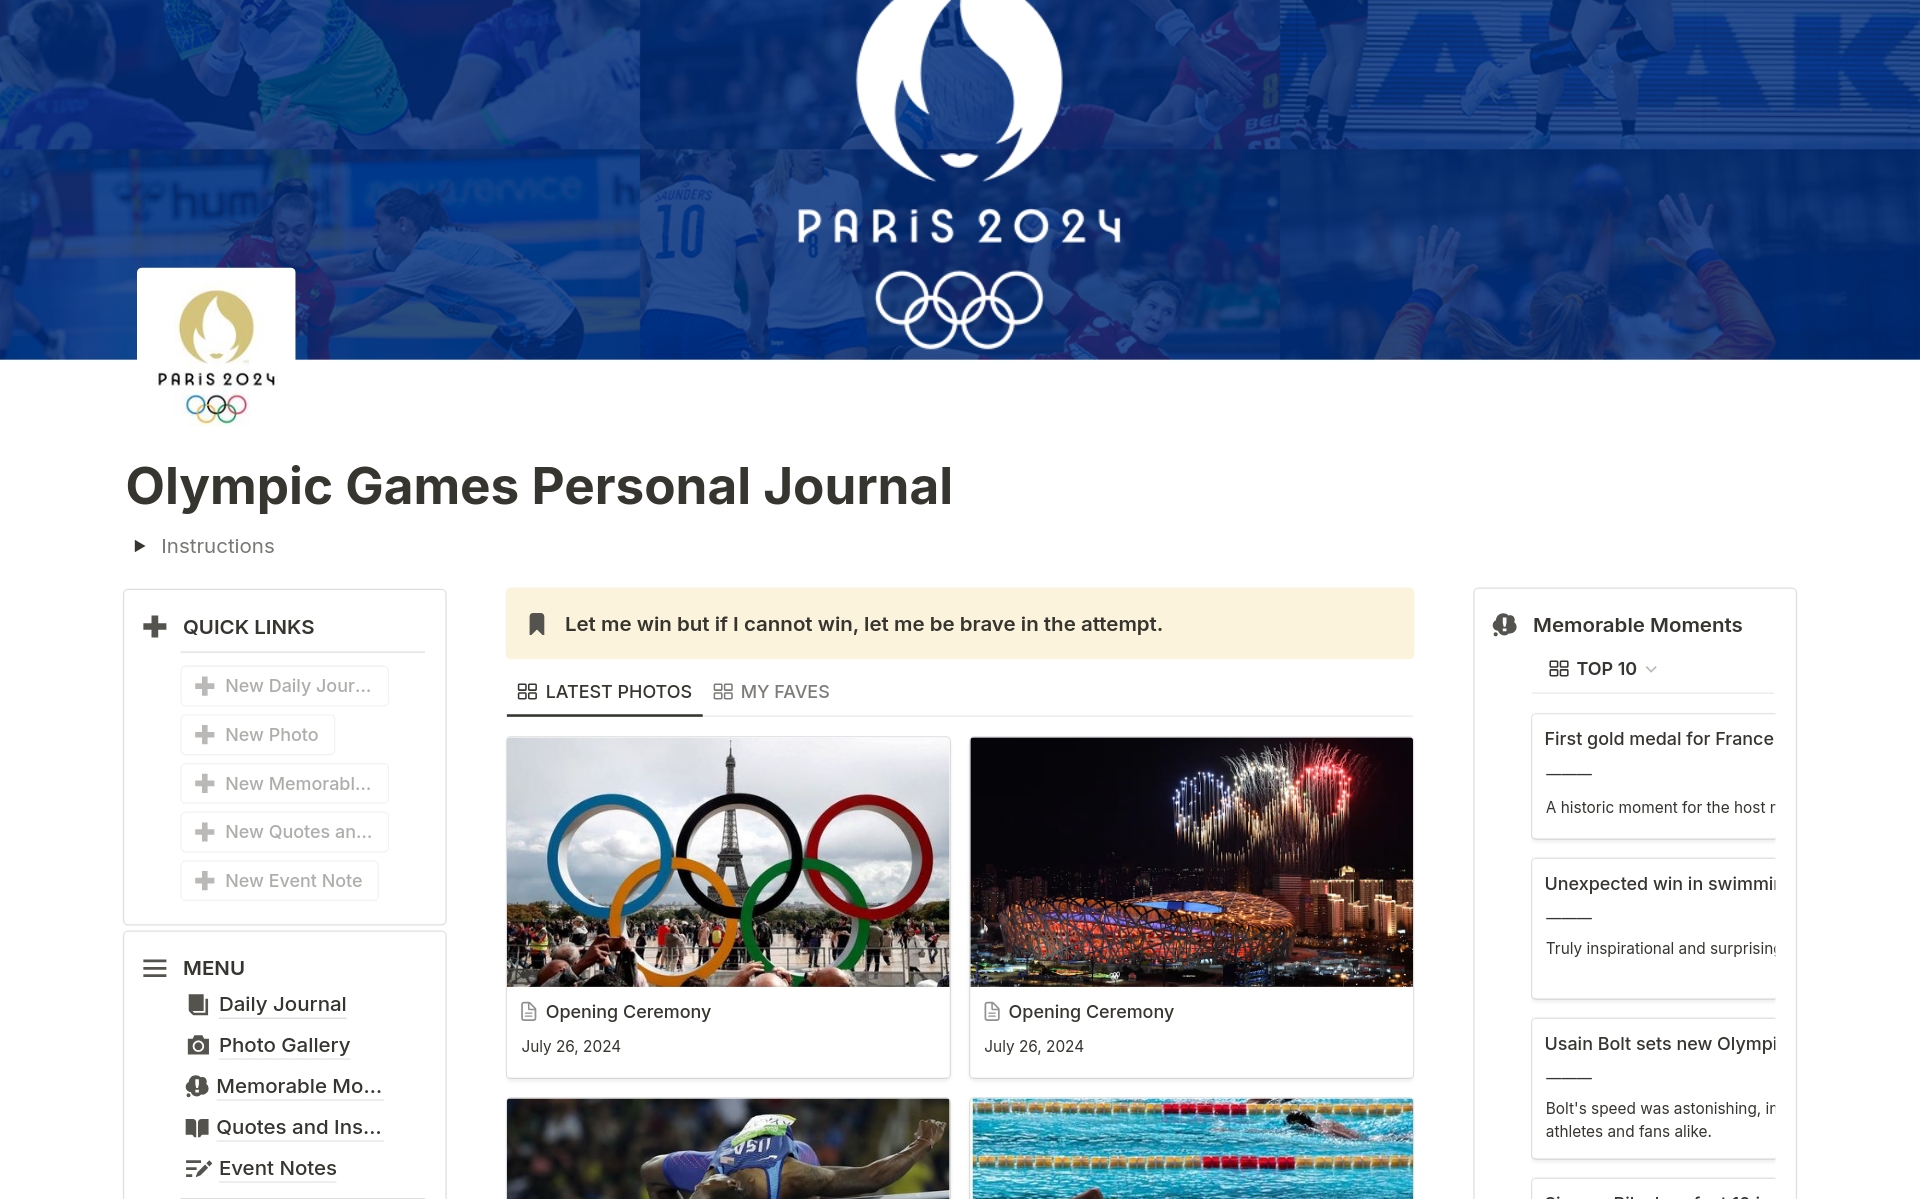 Uma prévia do modelo para Paris 2024 Olympic Games Personal Journal